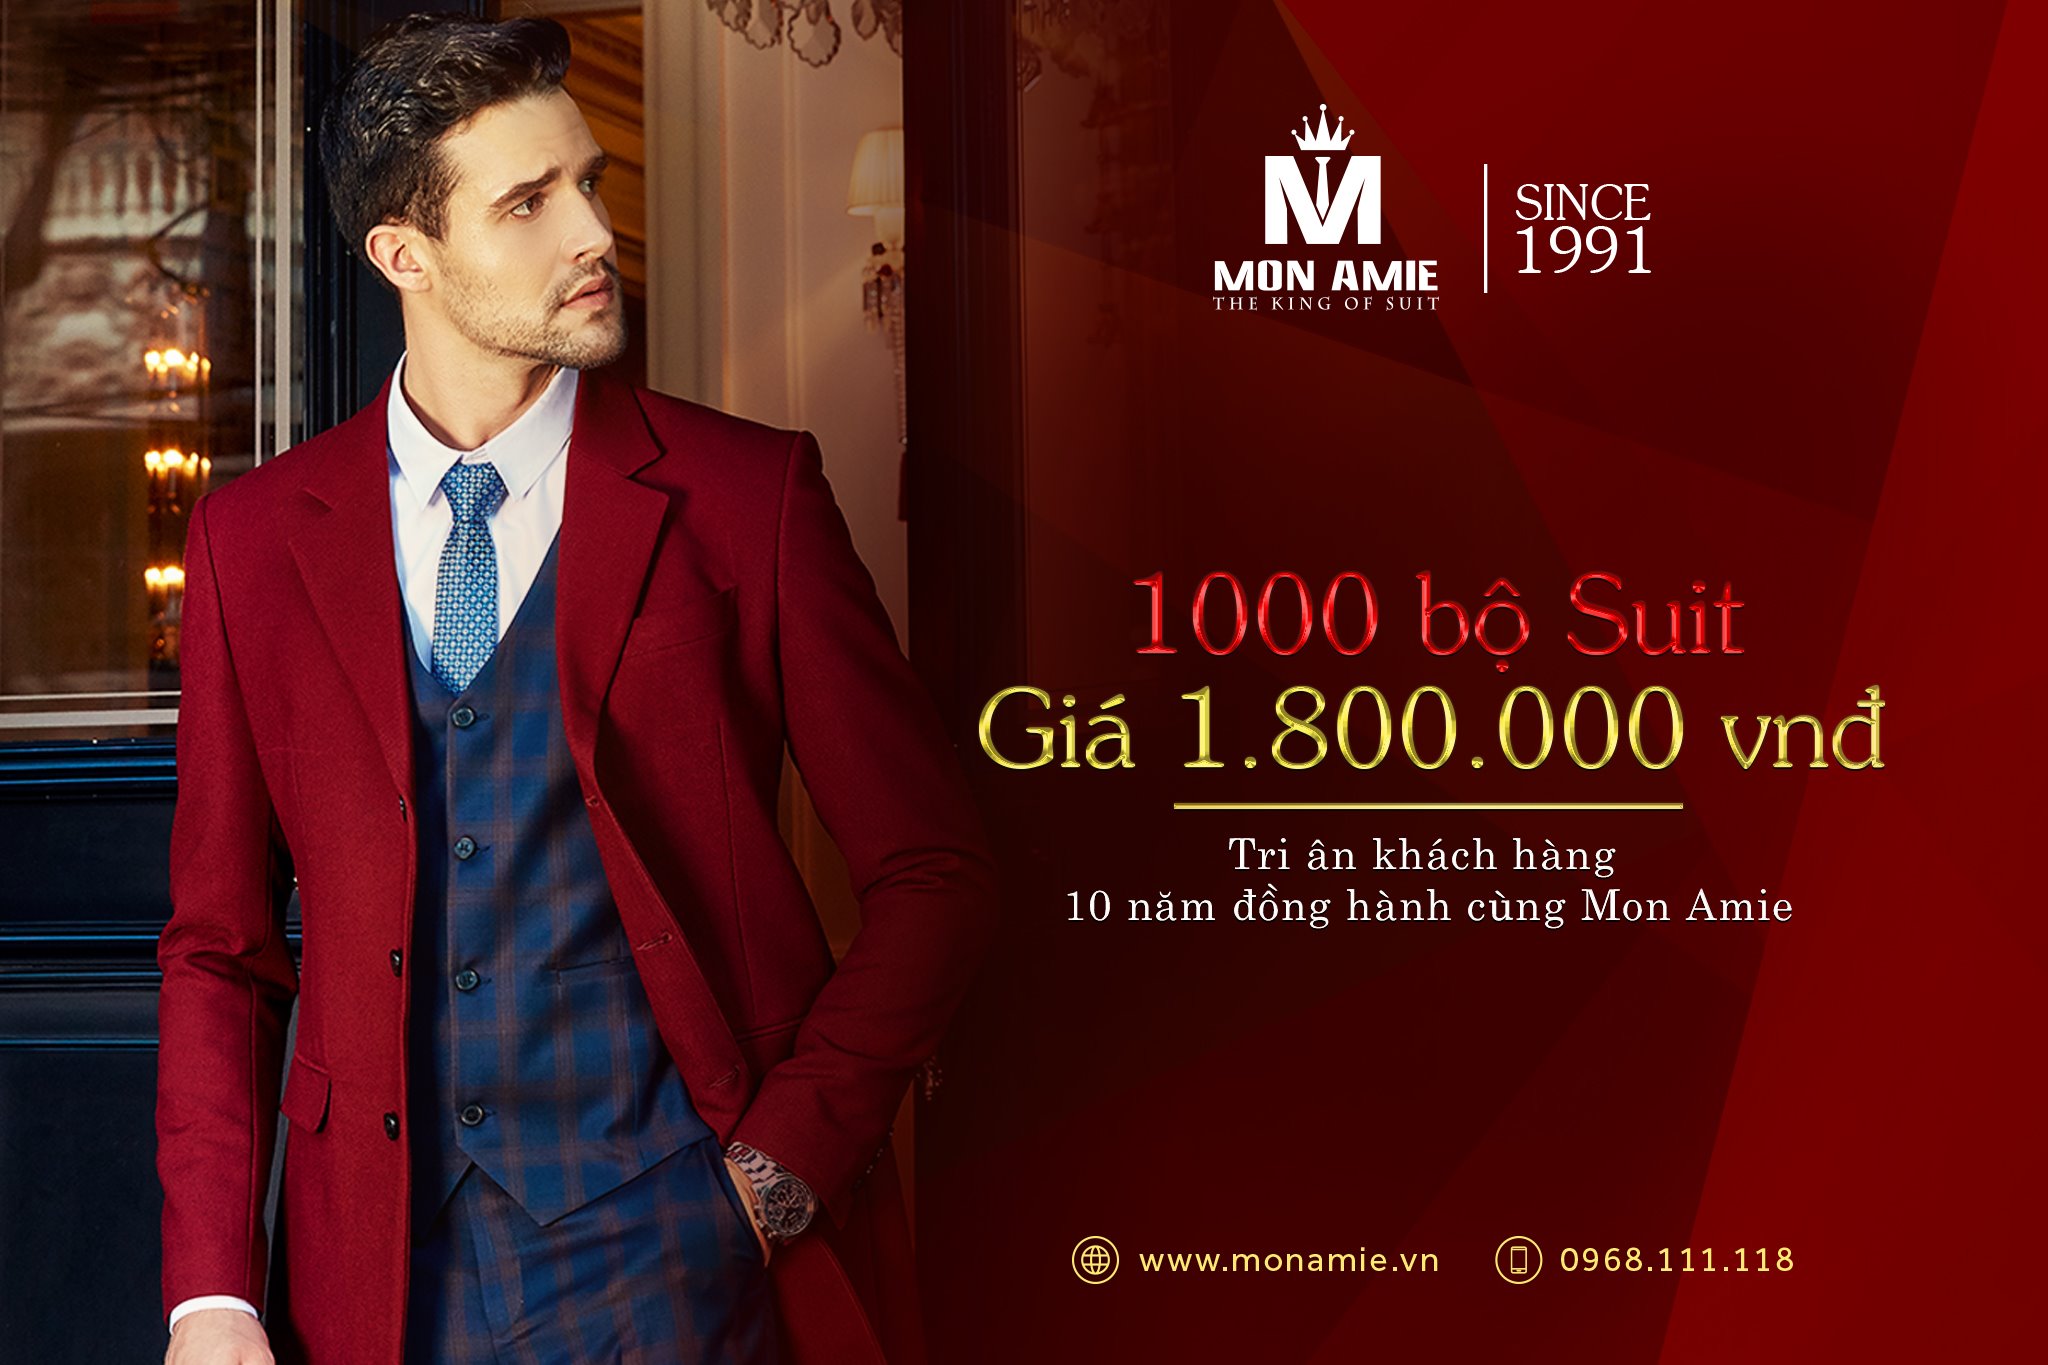 Cực hấp dẫn với Chương trình khuyến mãi tại Mon Amie “1000 bộ suit giá 1.800.000đ”